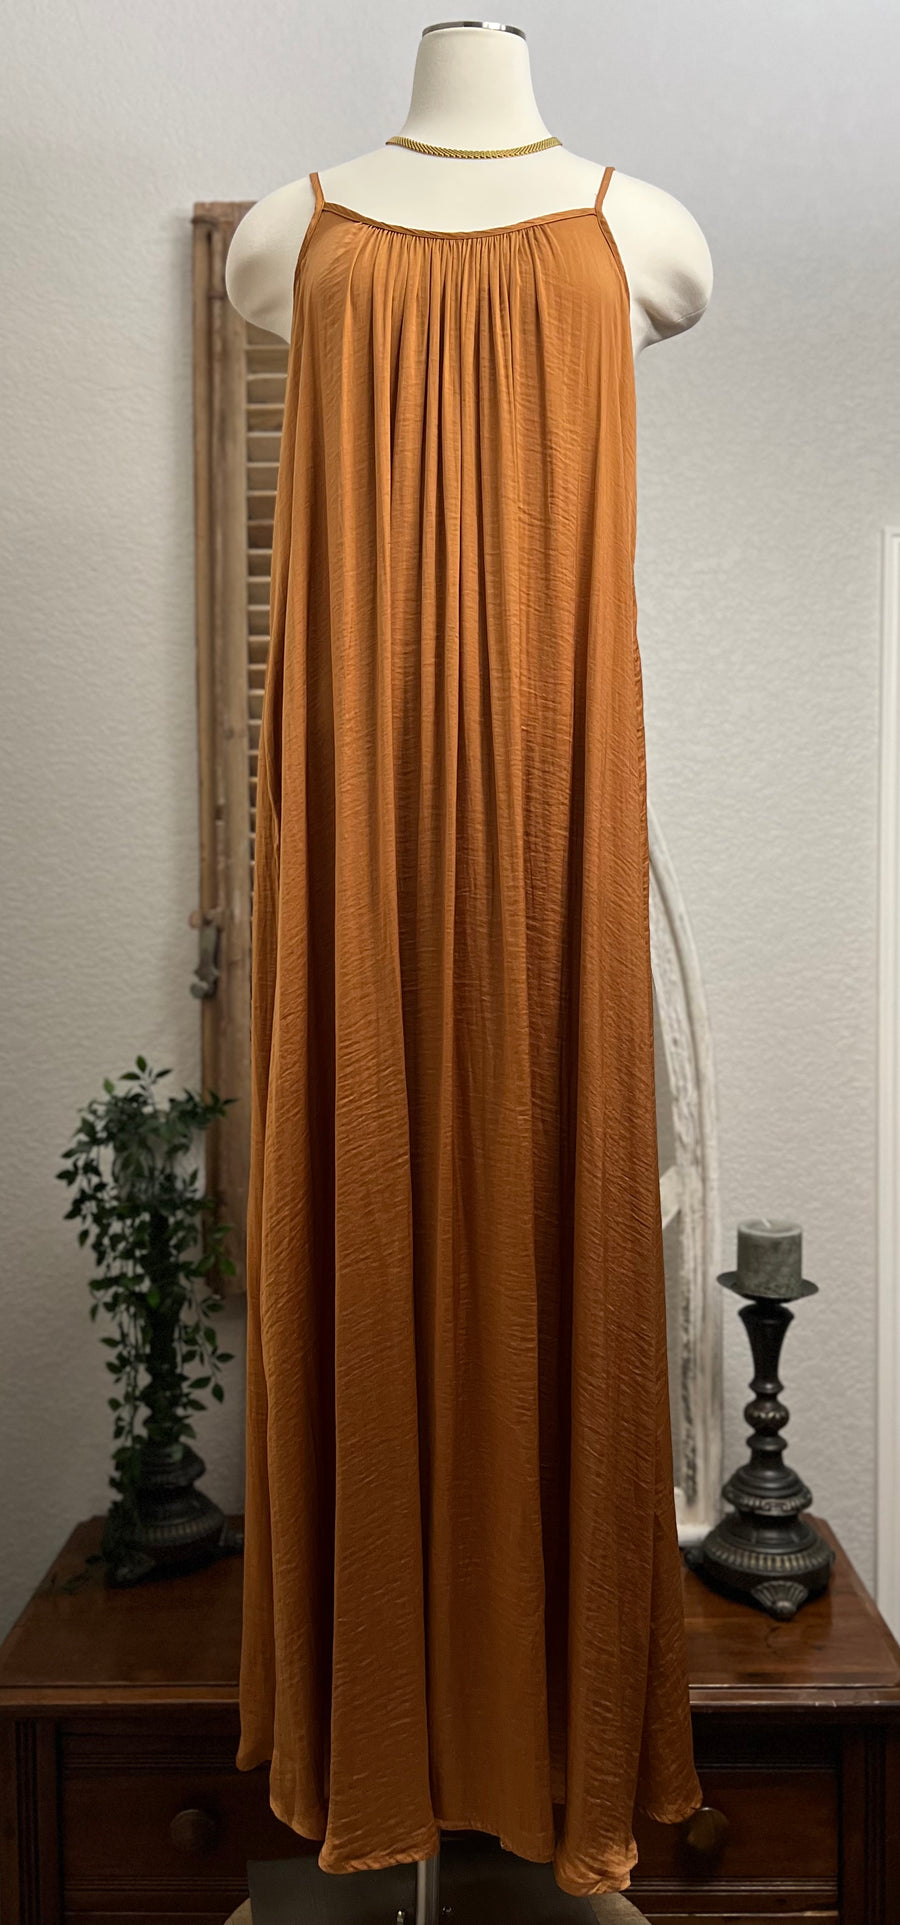 Joy Free Flow Copper Satin Maxi Dress with Adjustable Spaghetti Straps